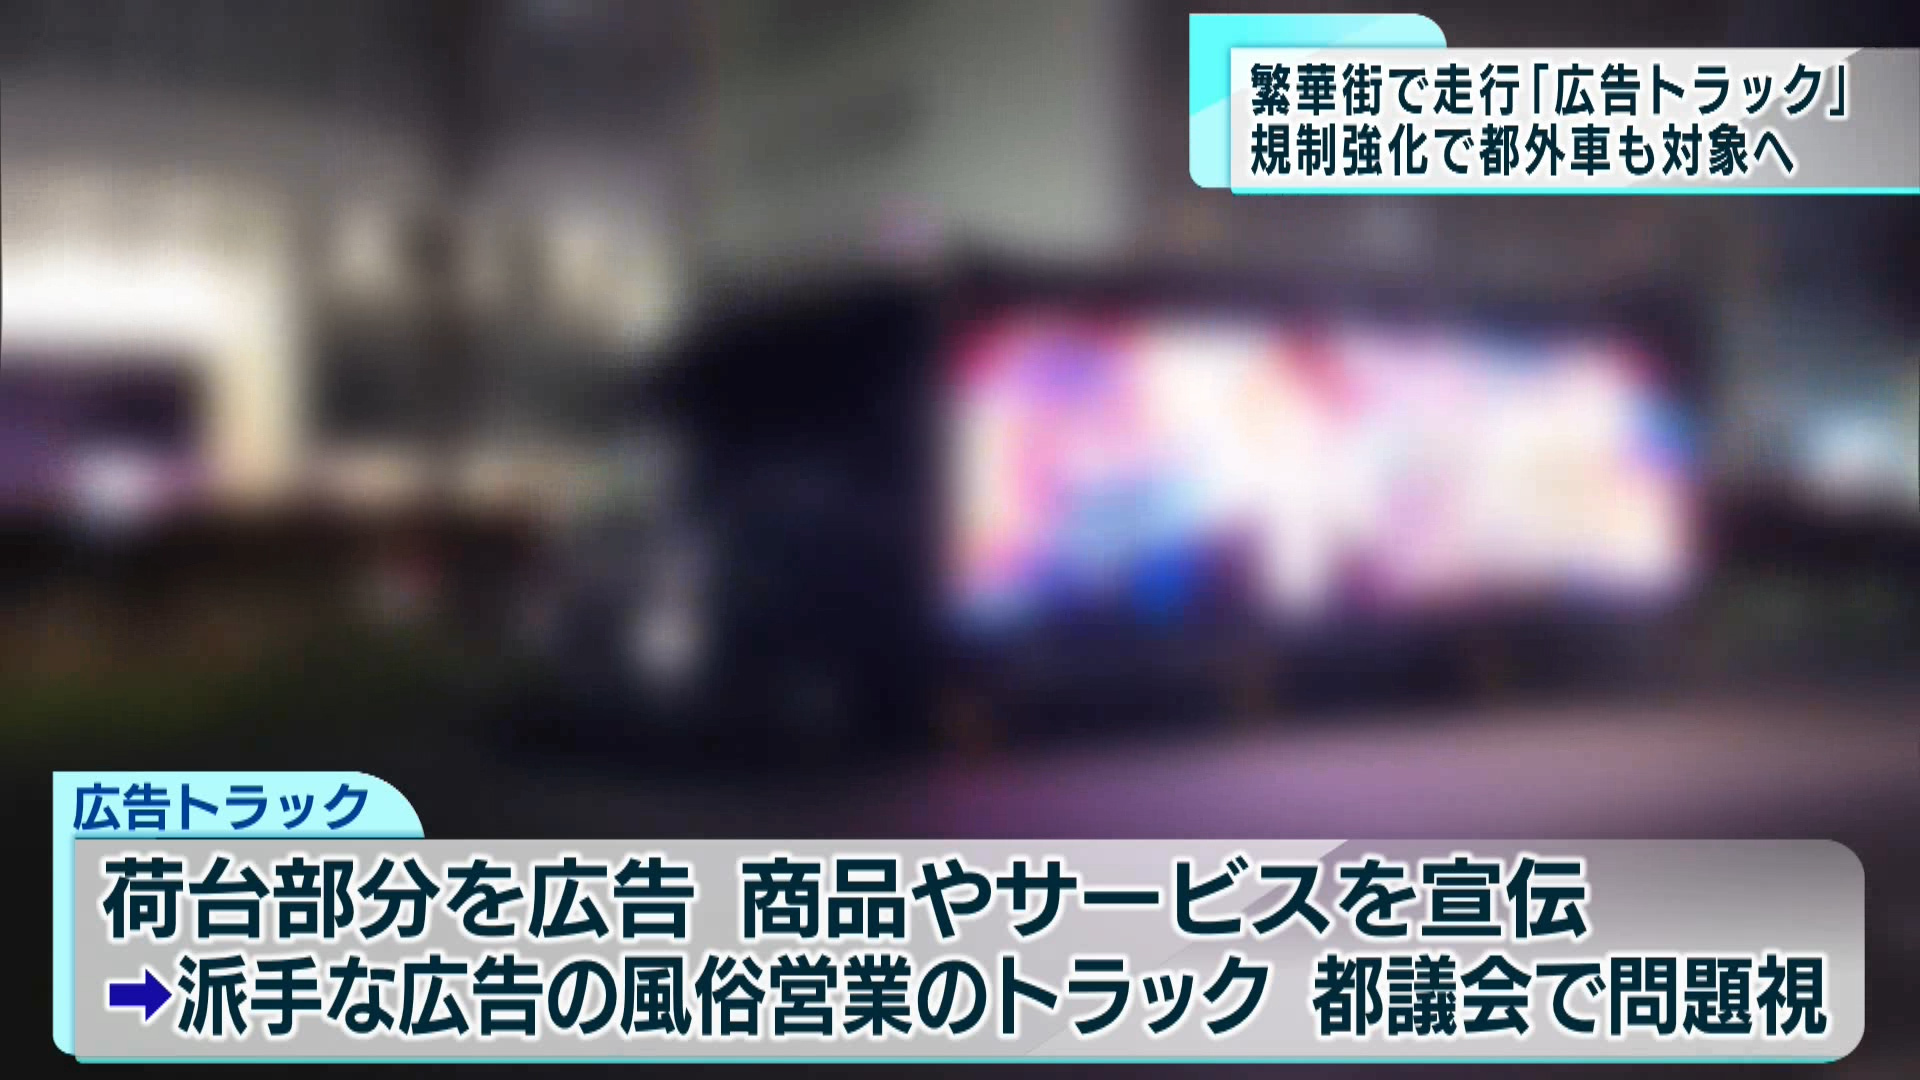 「広告トラック」東京都が規制強化へ